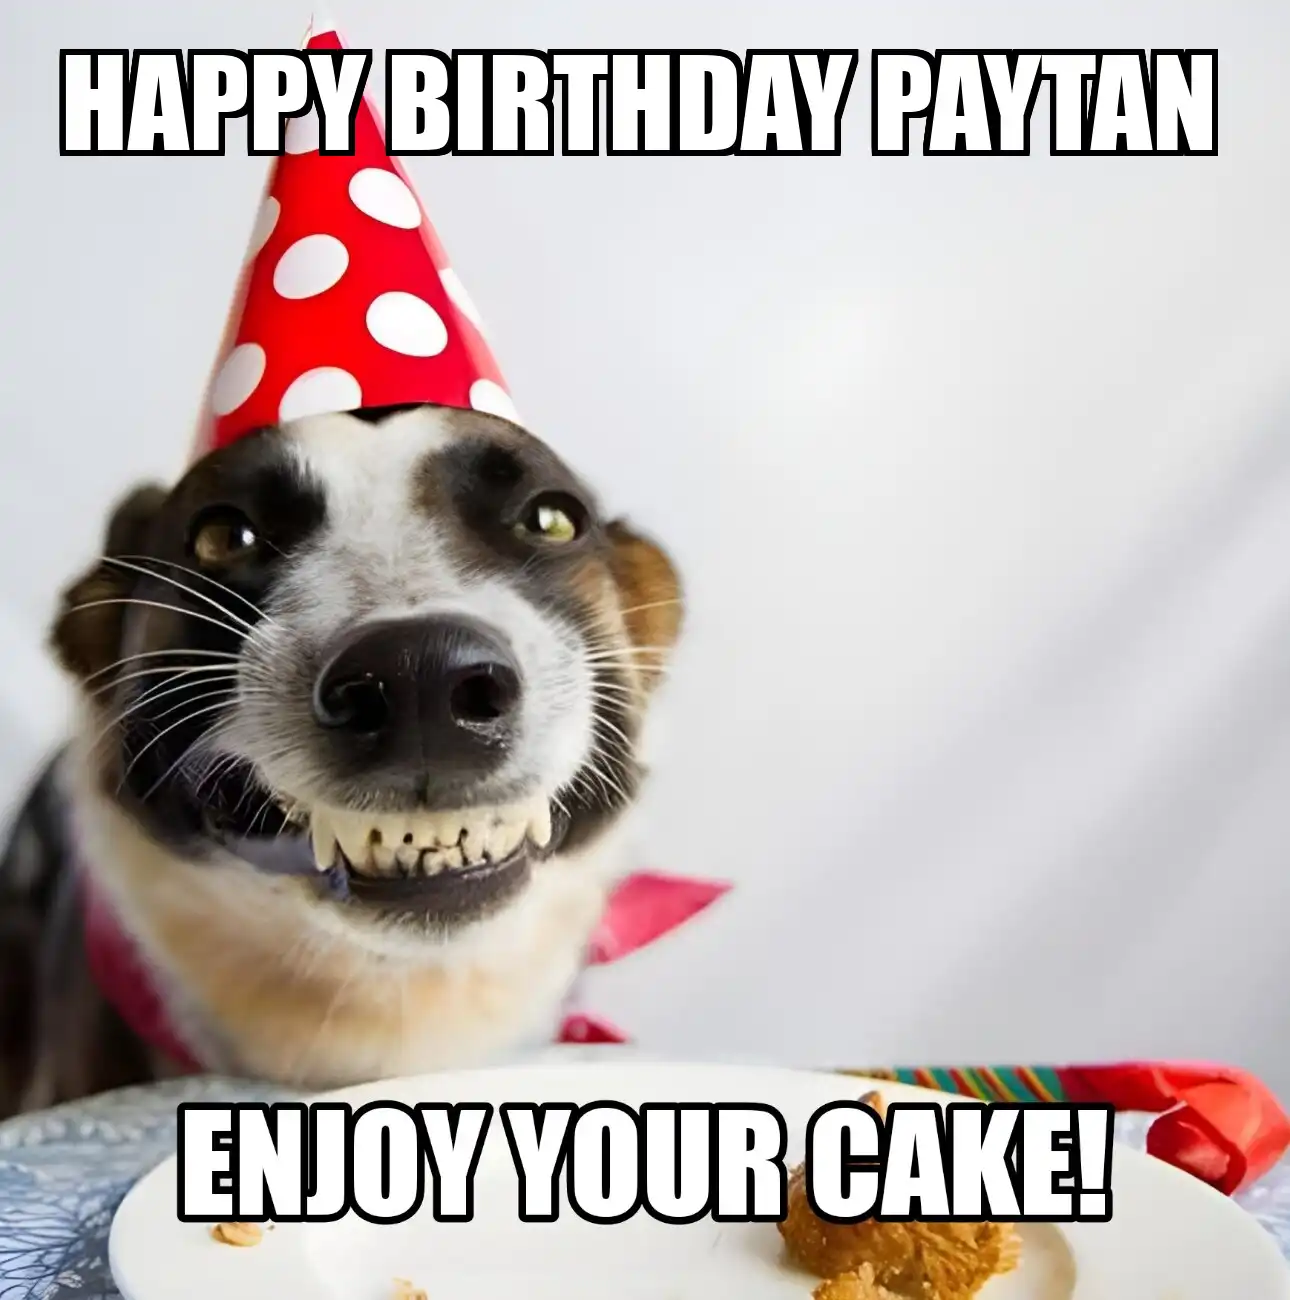 Happy Birthday Paytan Enjoy Your Cake Dog Meme